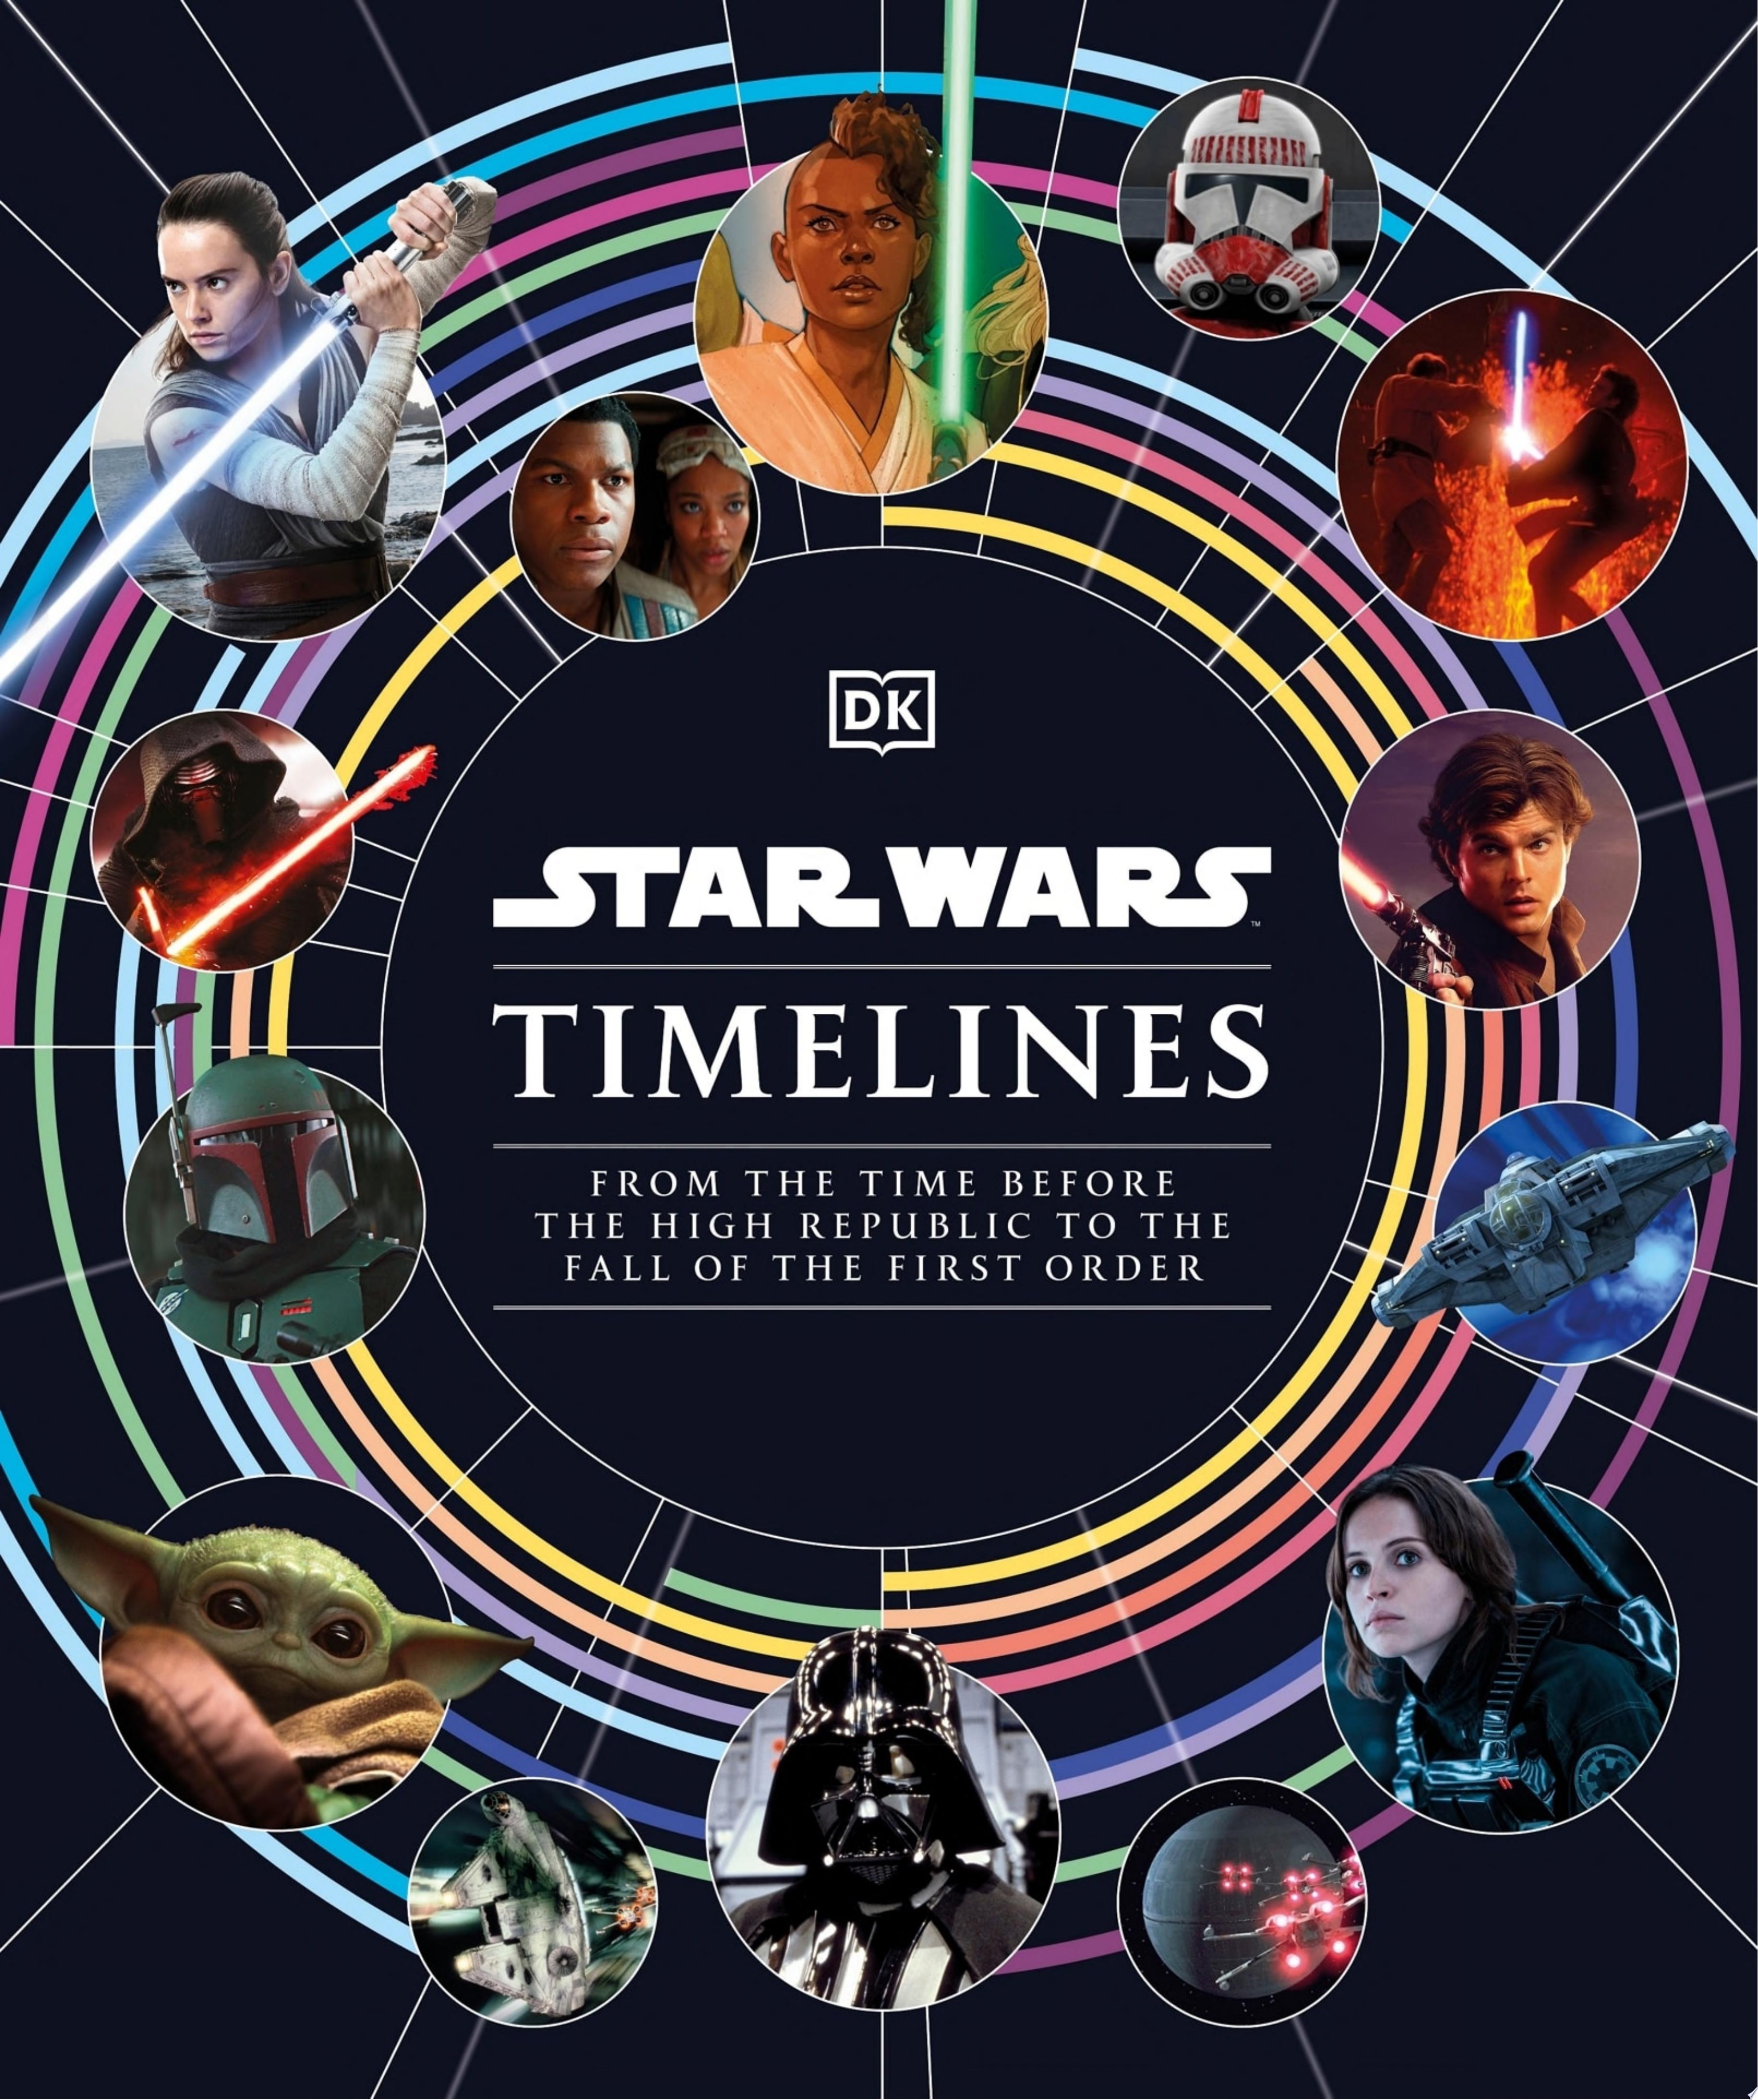 Image for "Star Wars Timelines"